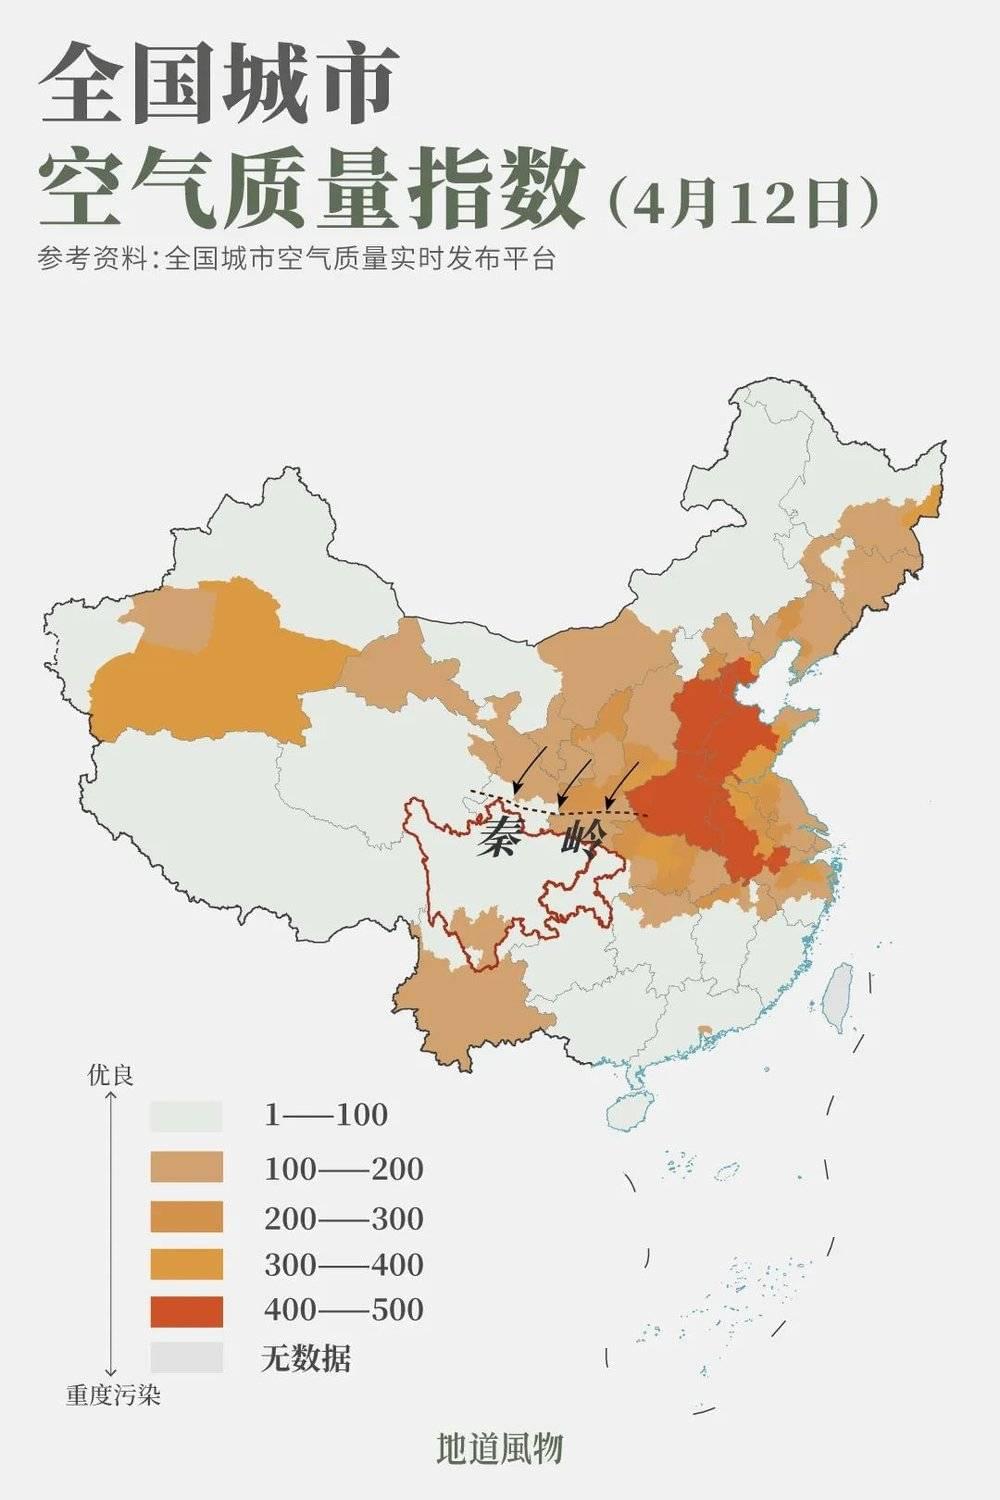 秦岭以南的陕南、川渝地区比同纬度的长江中下游地区拥有更多“呼吸自由”。制图/刘耘硕 